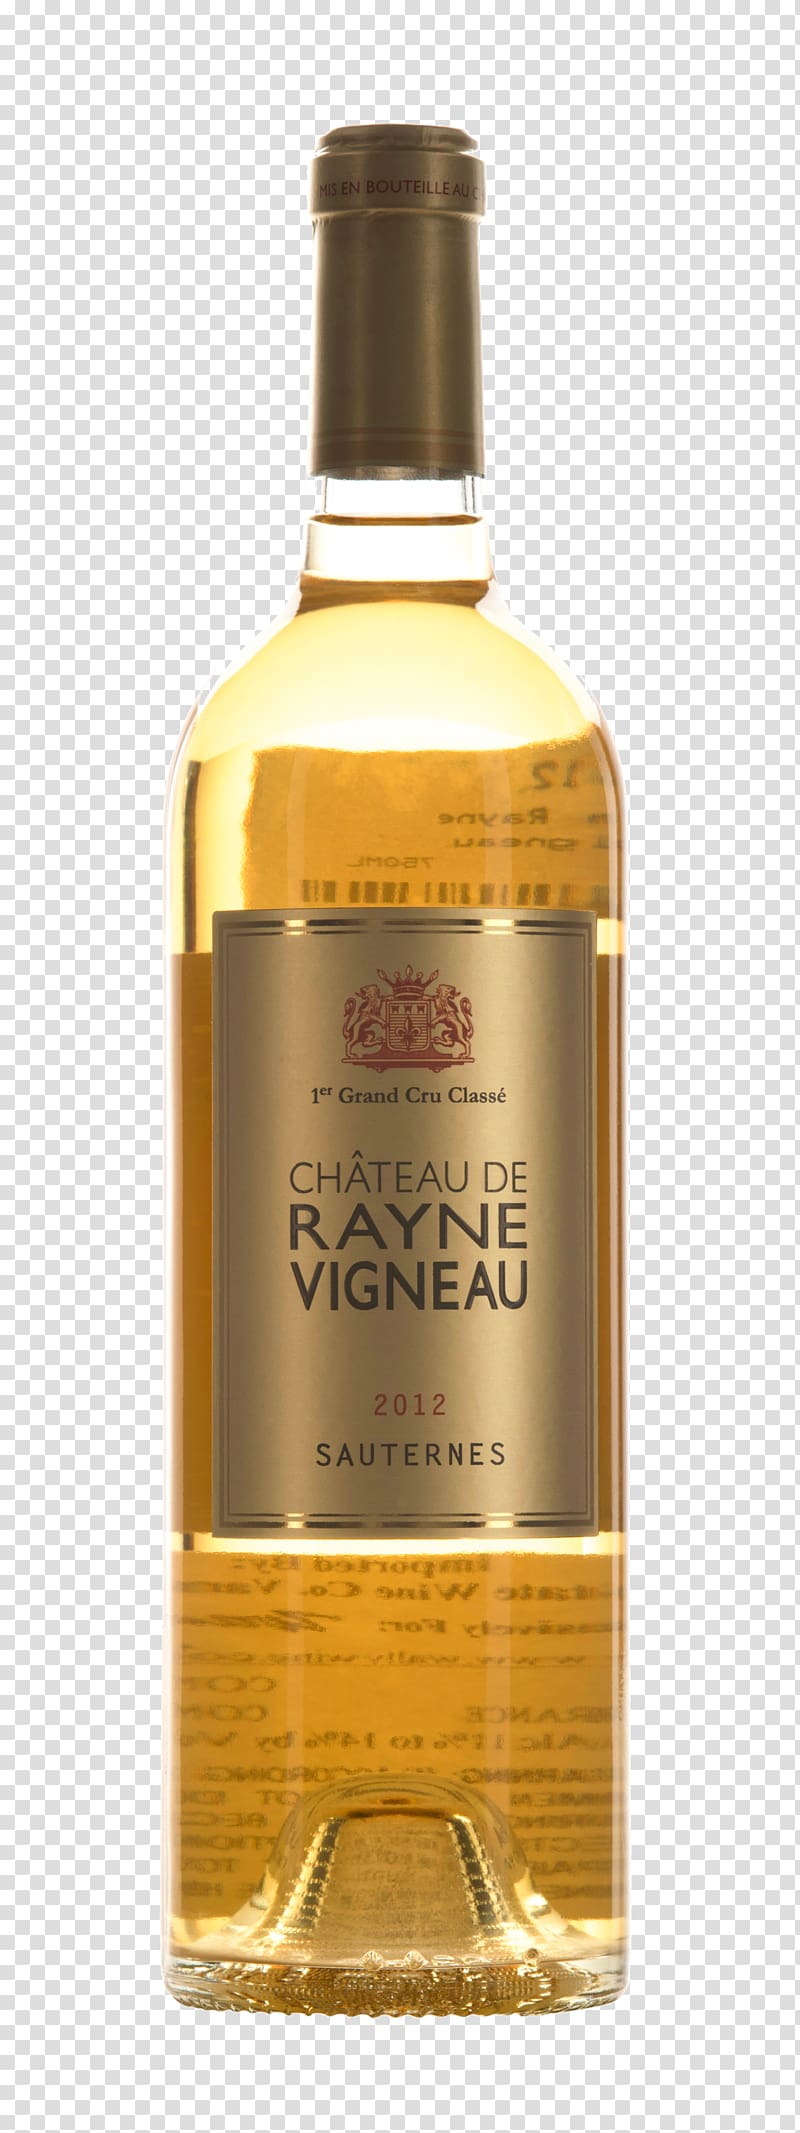 Wine Château Latour-Martillac Liqueur, Pineapple Tart transparent background PNG clipart